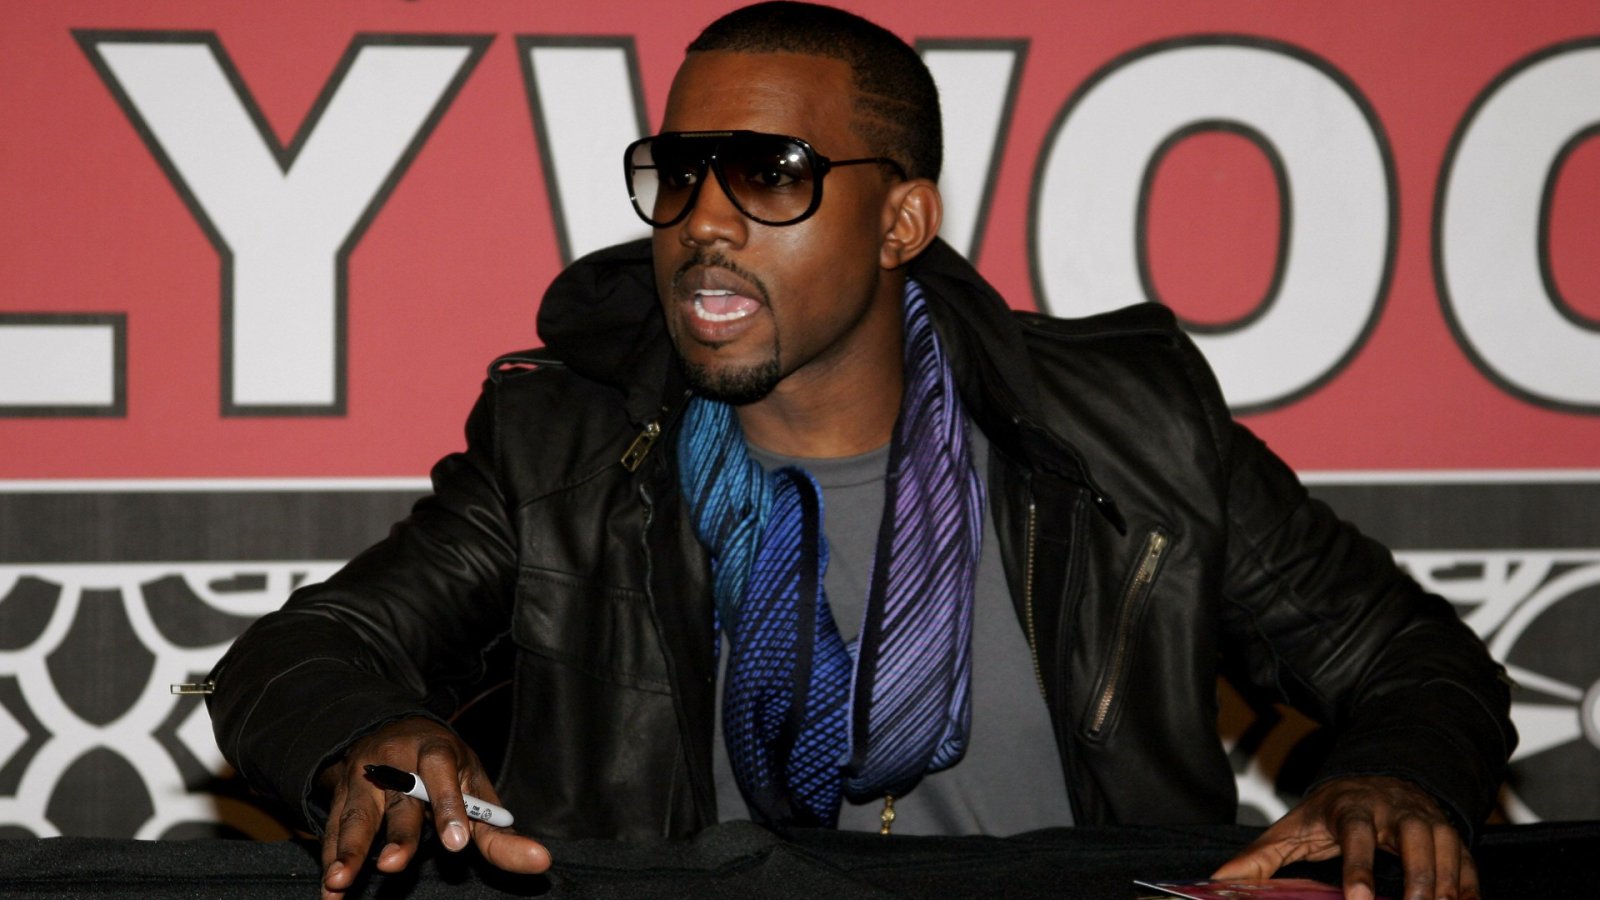 Cea mai mare cădere a unui artist: Kanye West și brandurile tăind legăturile